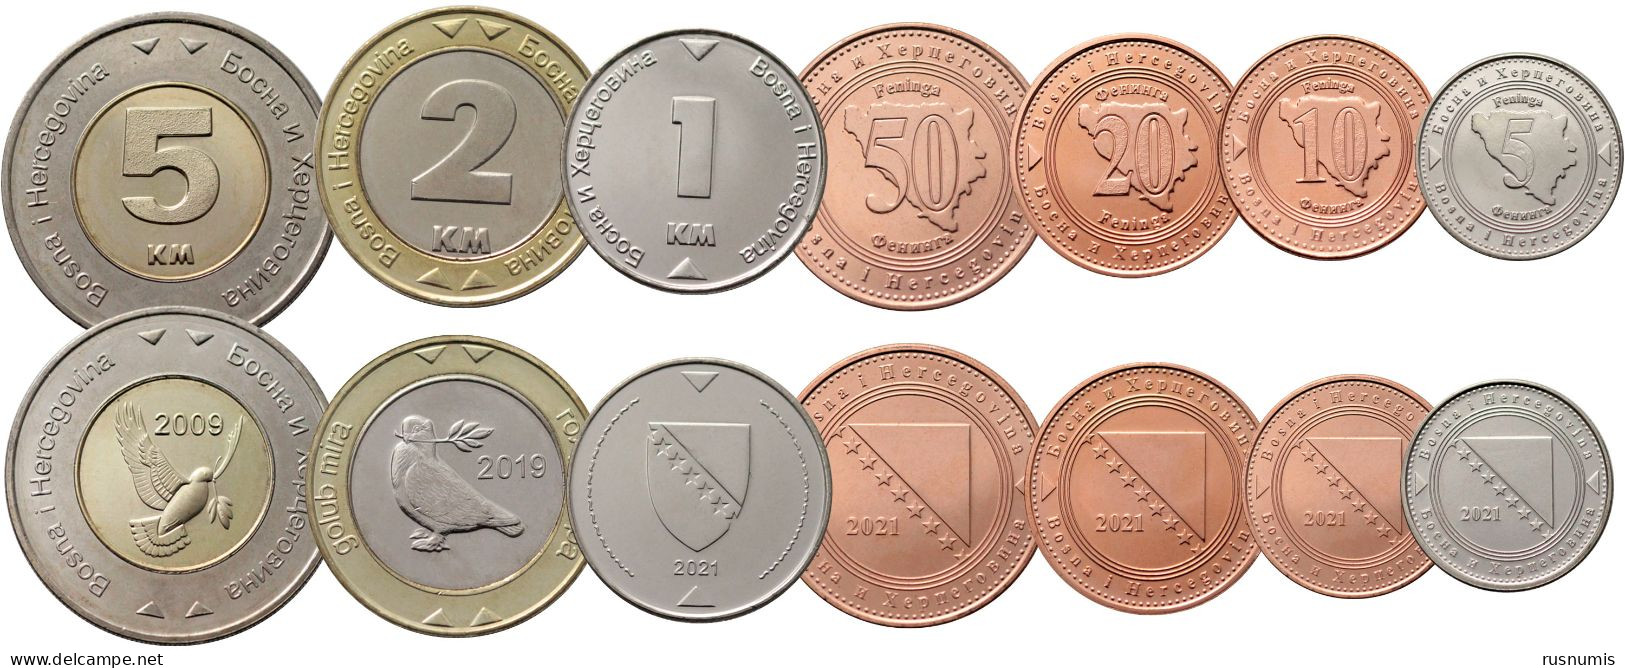 BOSNIA AND HERZEGOVINA 7 COINS SET 5 10 20 50 FENINGA 1 2 5 KM MARAKA BIMETAL 2009 2021 UNC - Bosnia And Herzegovina